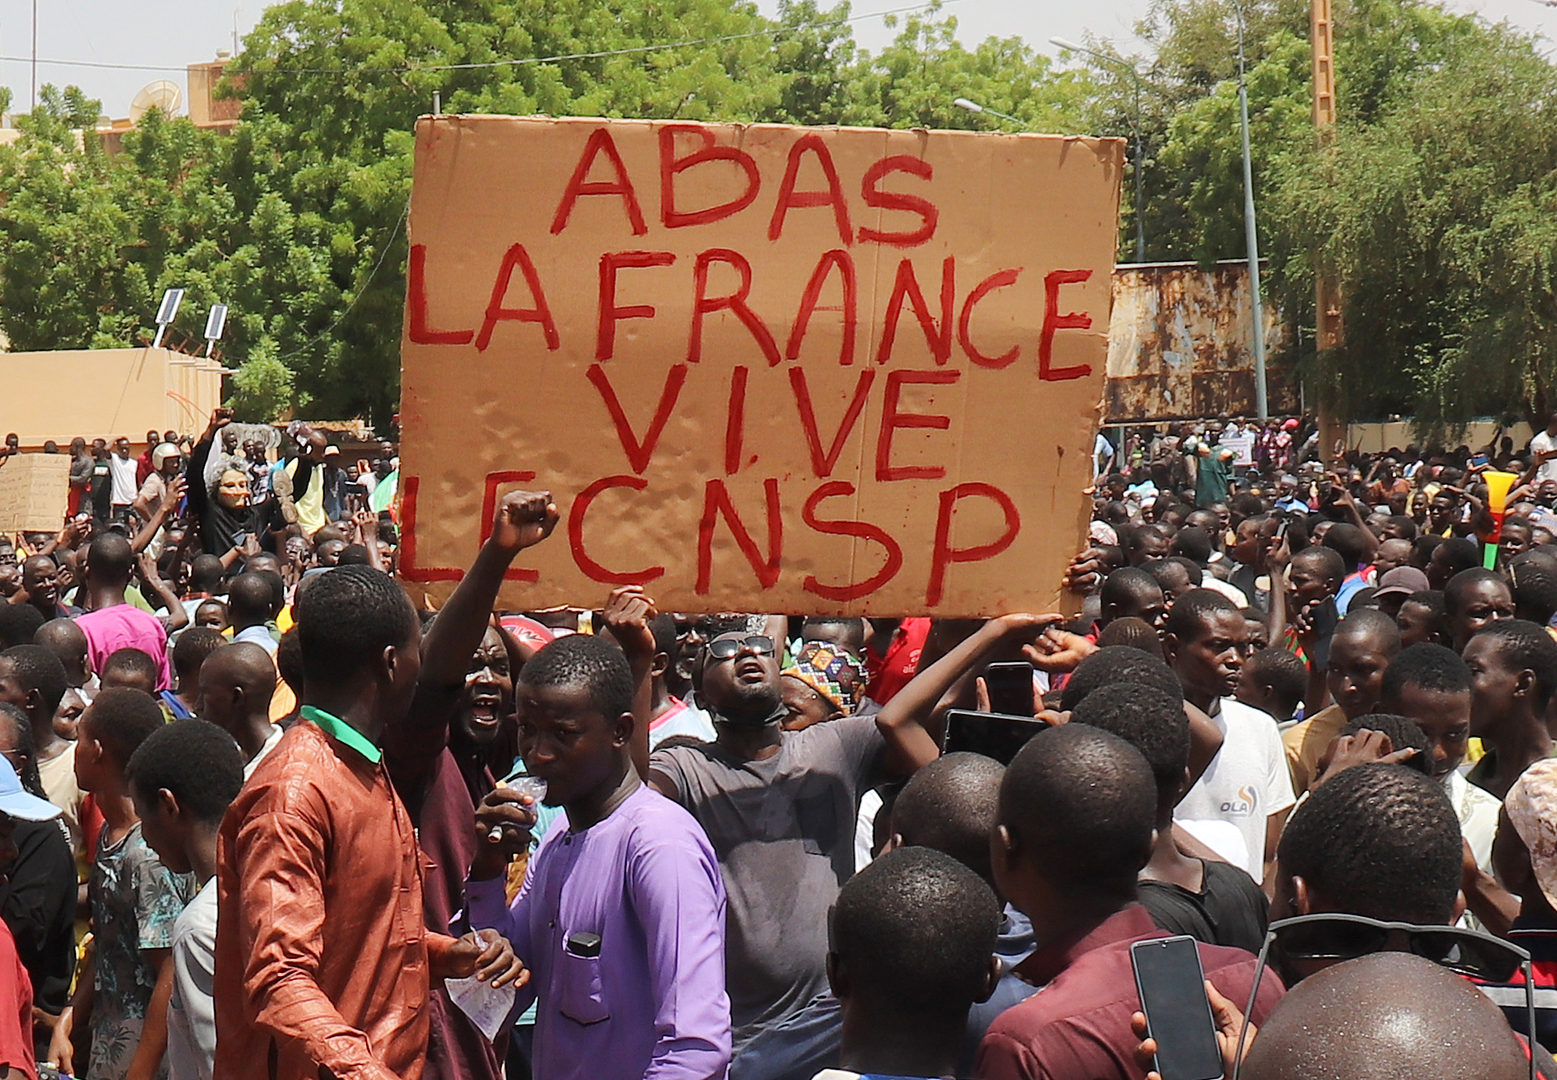 فرنسا تبدأ بإجلاء رعاياها من النيجر